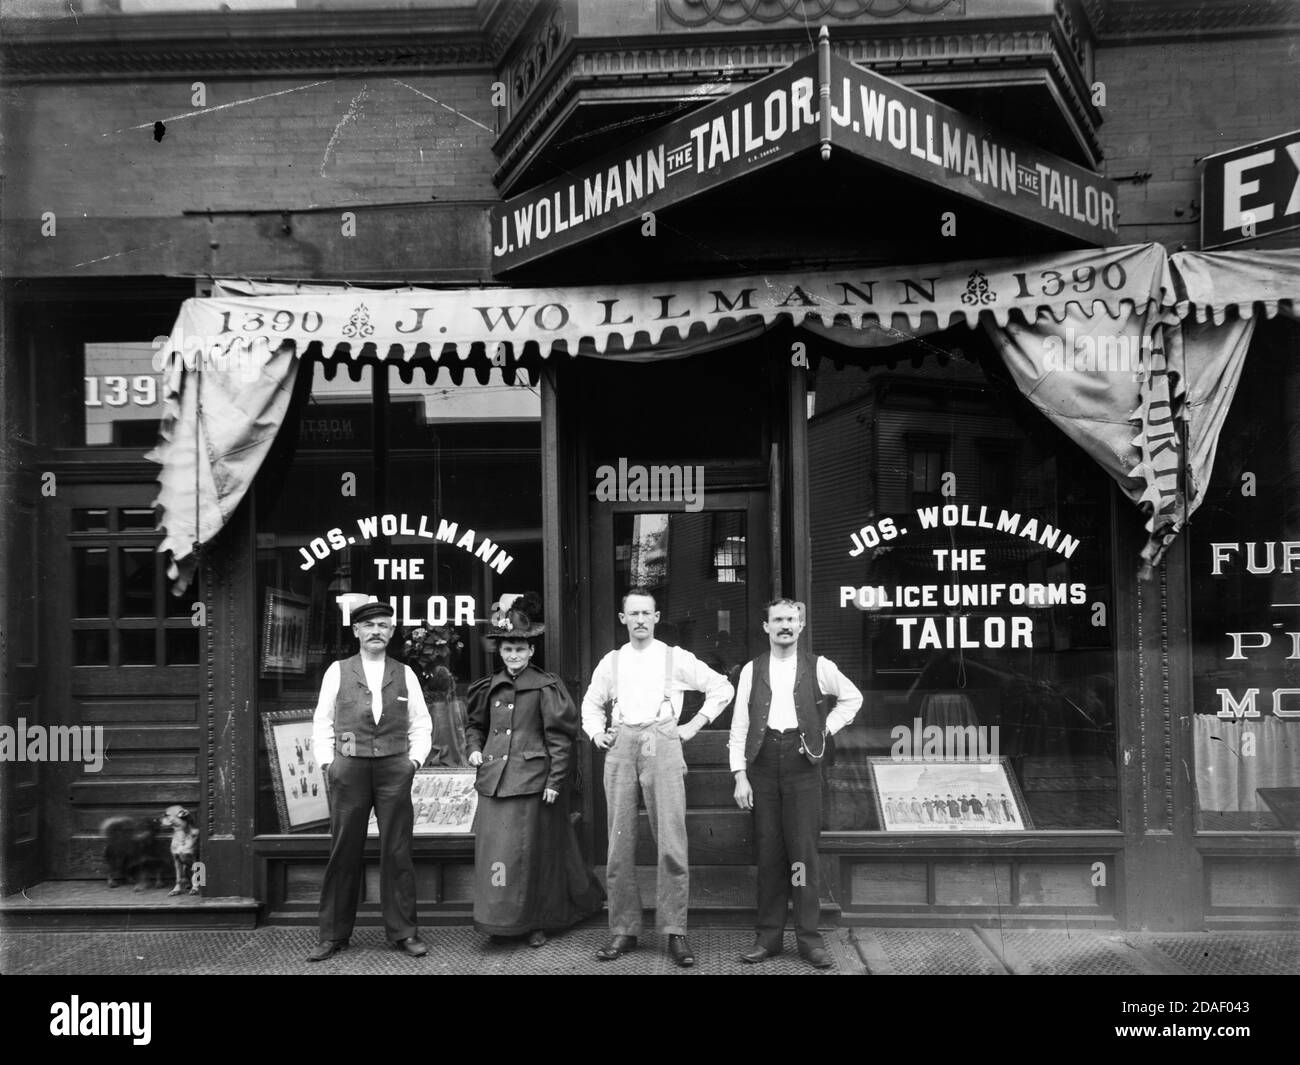 Des personnes non identifiées se tenant à l'extérieur de Joseph Wollmann, un magasin de couture situé au 1390 North Clark Street, Chicago, Illinois, vers 1895. Banque D'Images